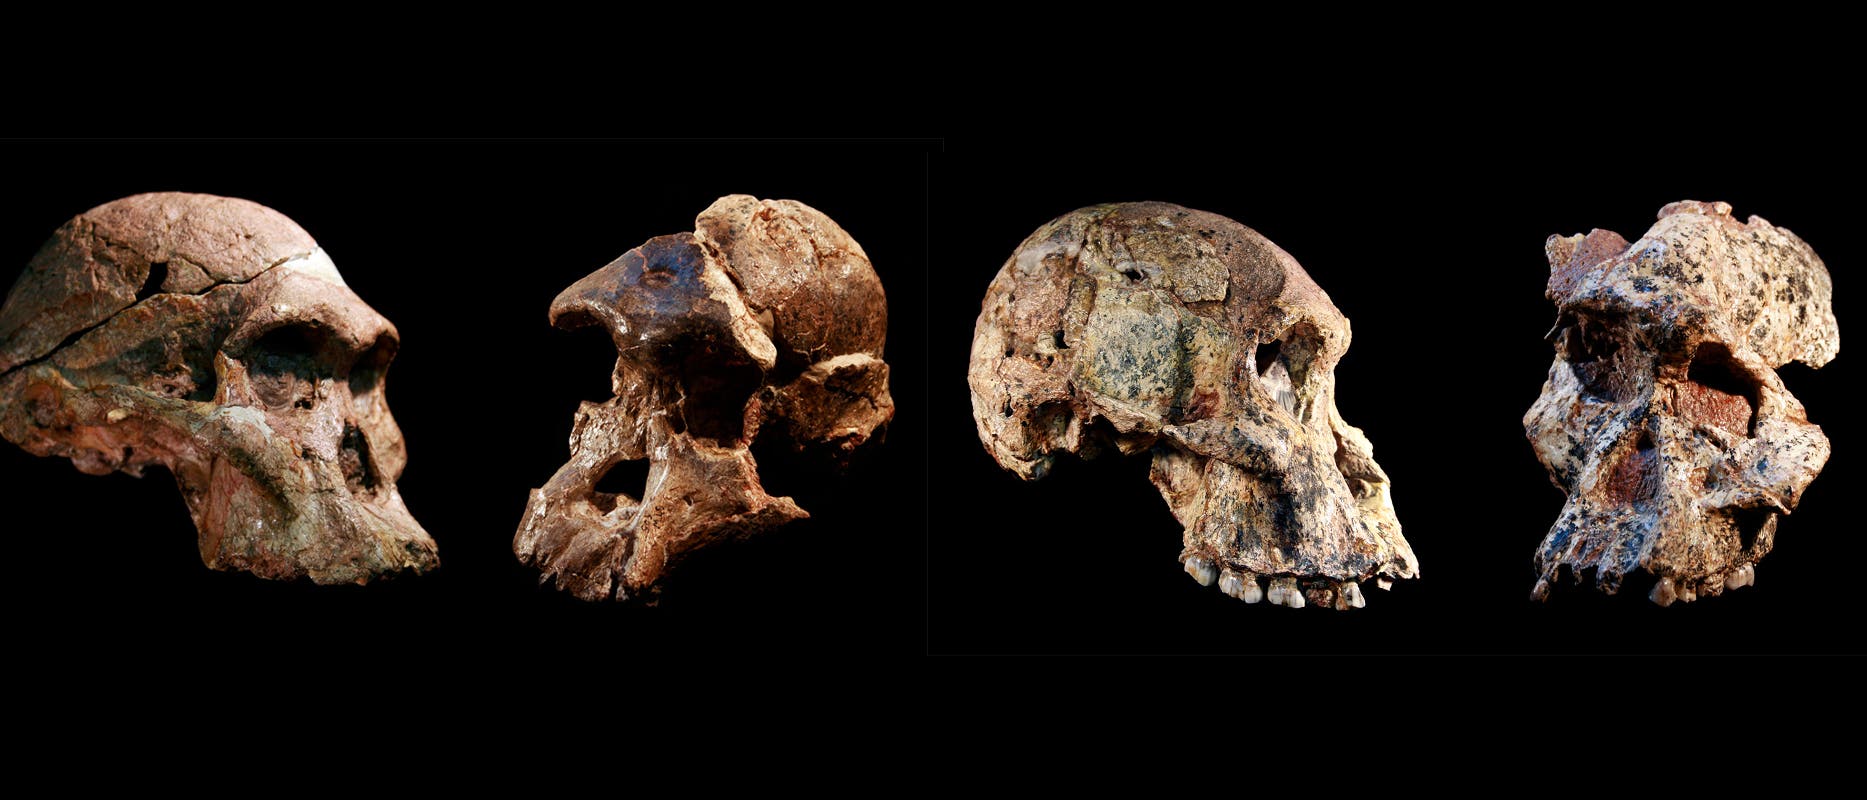 Vier Schädel von Australopithecinen aus den südafrikanischen Karsthöhlen von Sterkfontein. Ihr Alter beträgt bis zu 3,7 Millionen Jahre laut einer neuen Datierung.